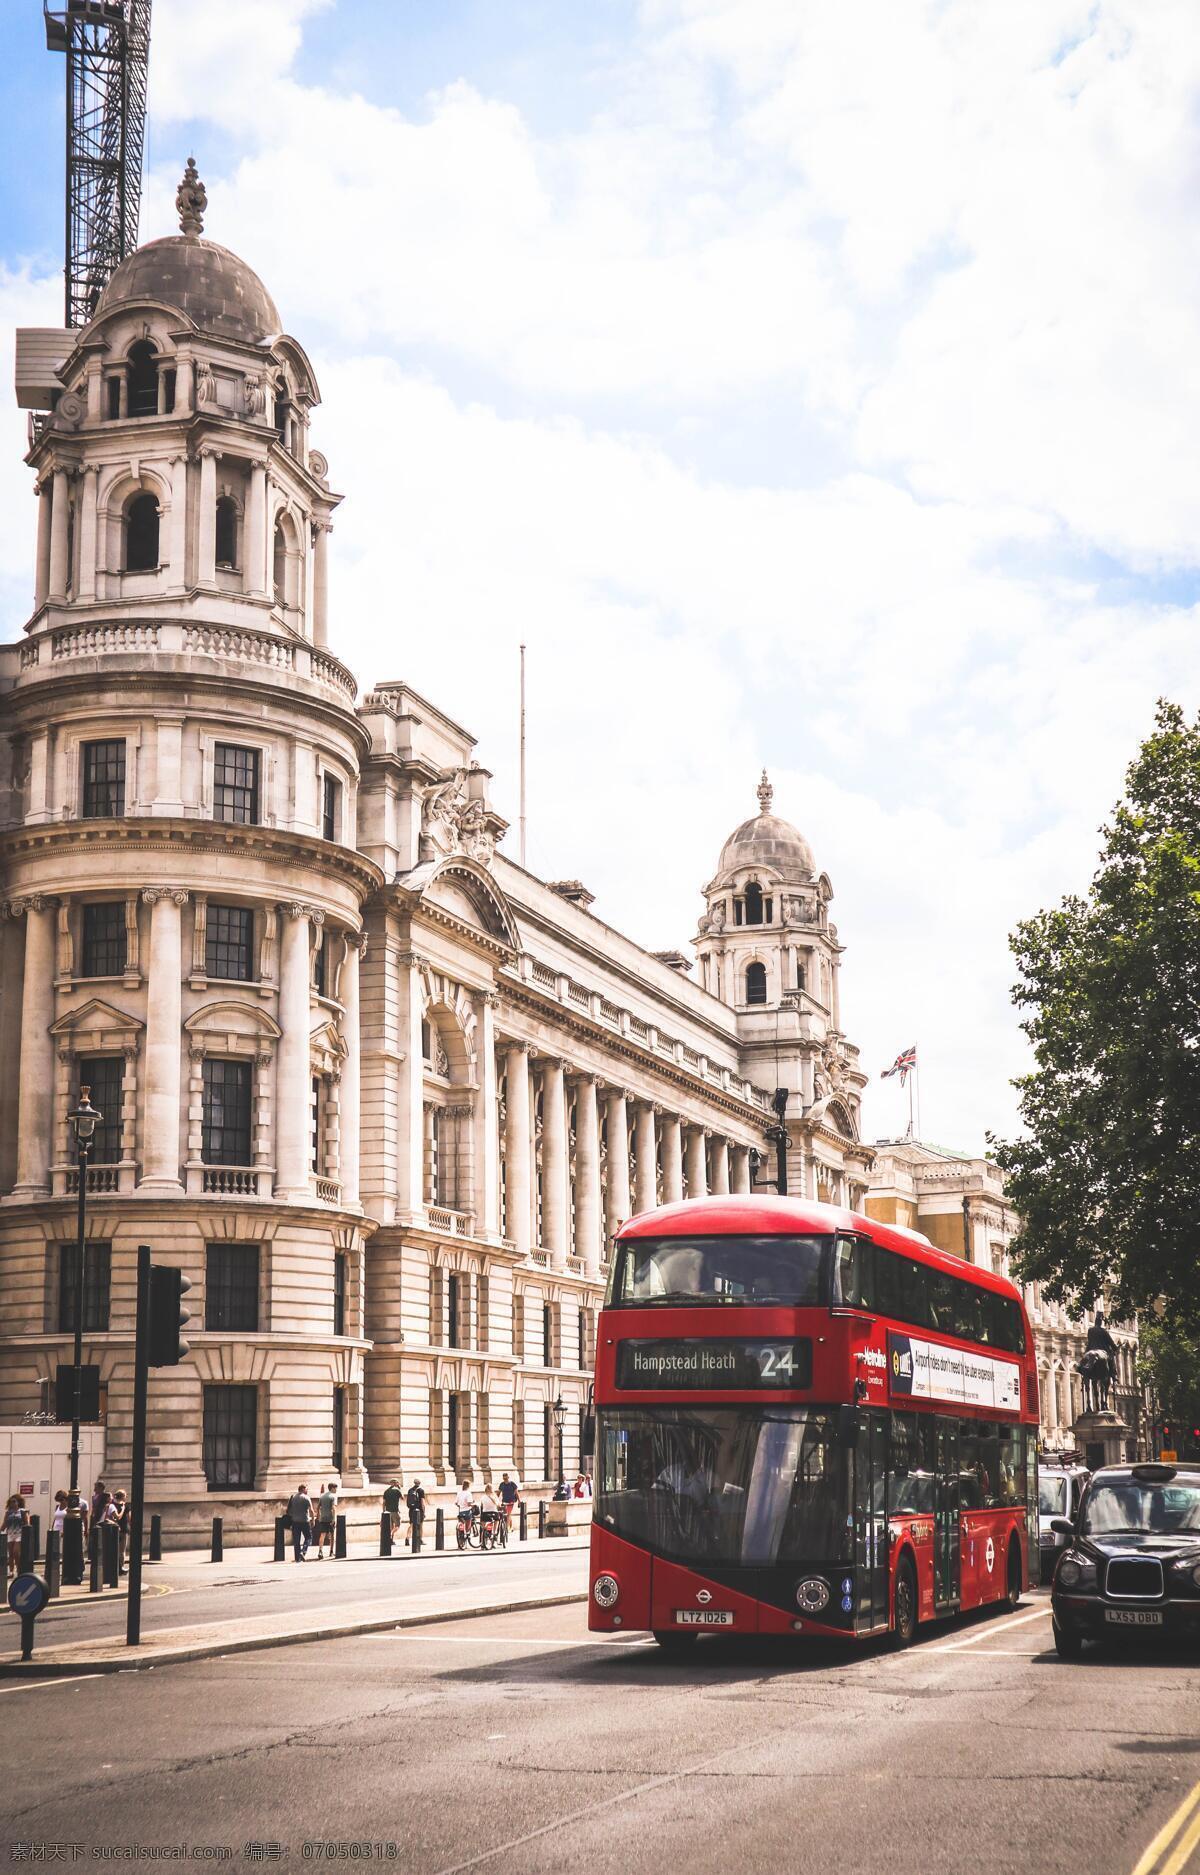 伦敦公交 伦敦 公交 英国 双层 双层巴士 大巴车 大巴 汽车 红色 建筑 街头 街道 欧式 大气 城市 现代科技 交通工具